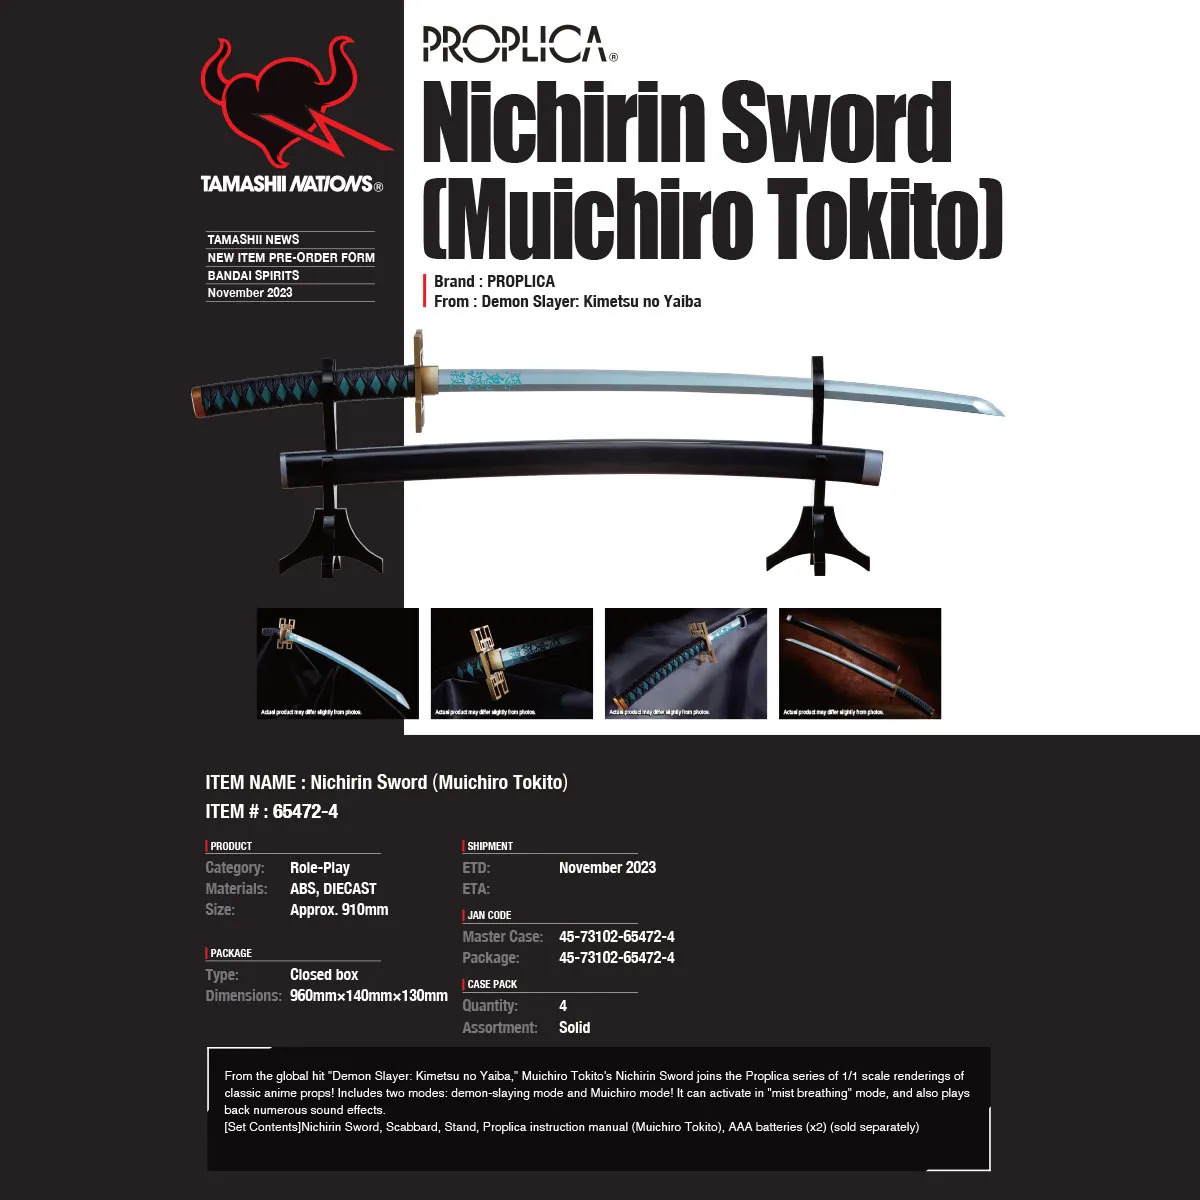 Muichiro Tokito Demon Slayer Kimetsu no Yaiba Nichirin Sword Proplica (5)